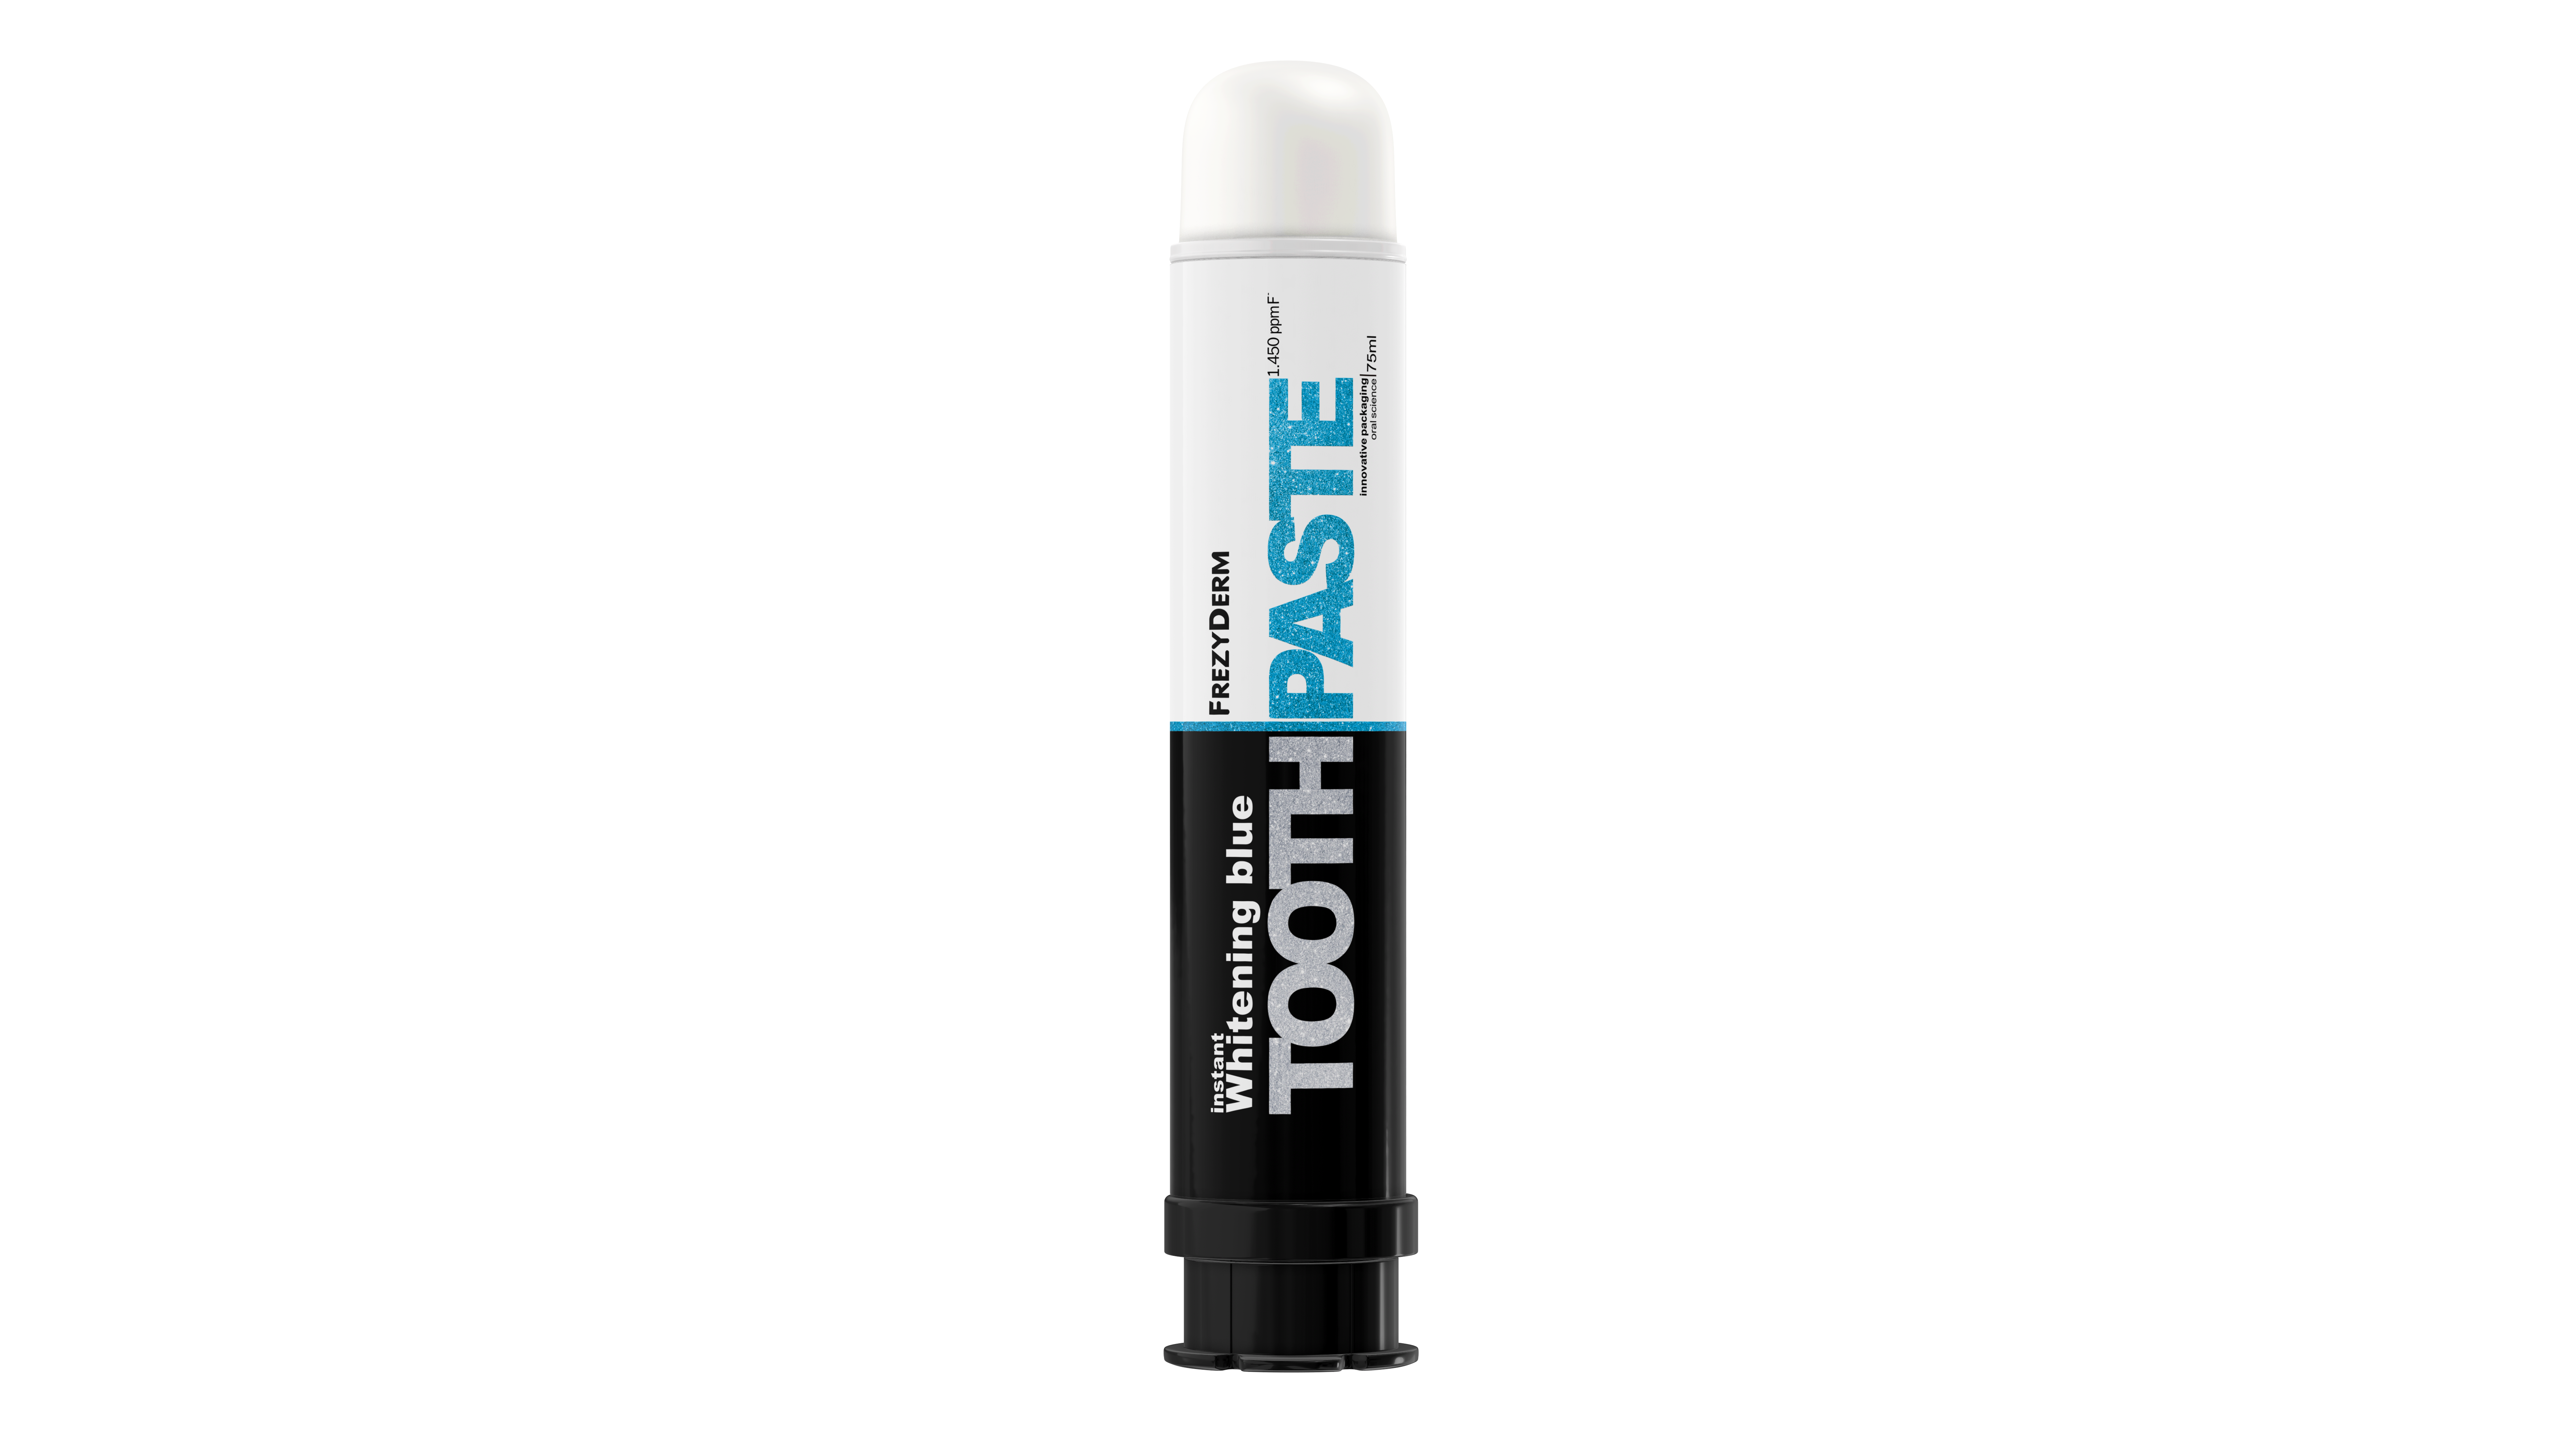 Instant Whitening BlueToothpaste